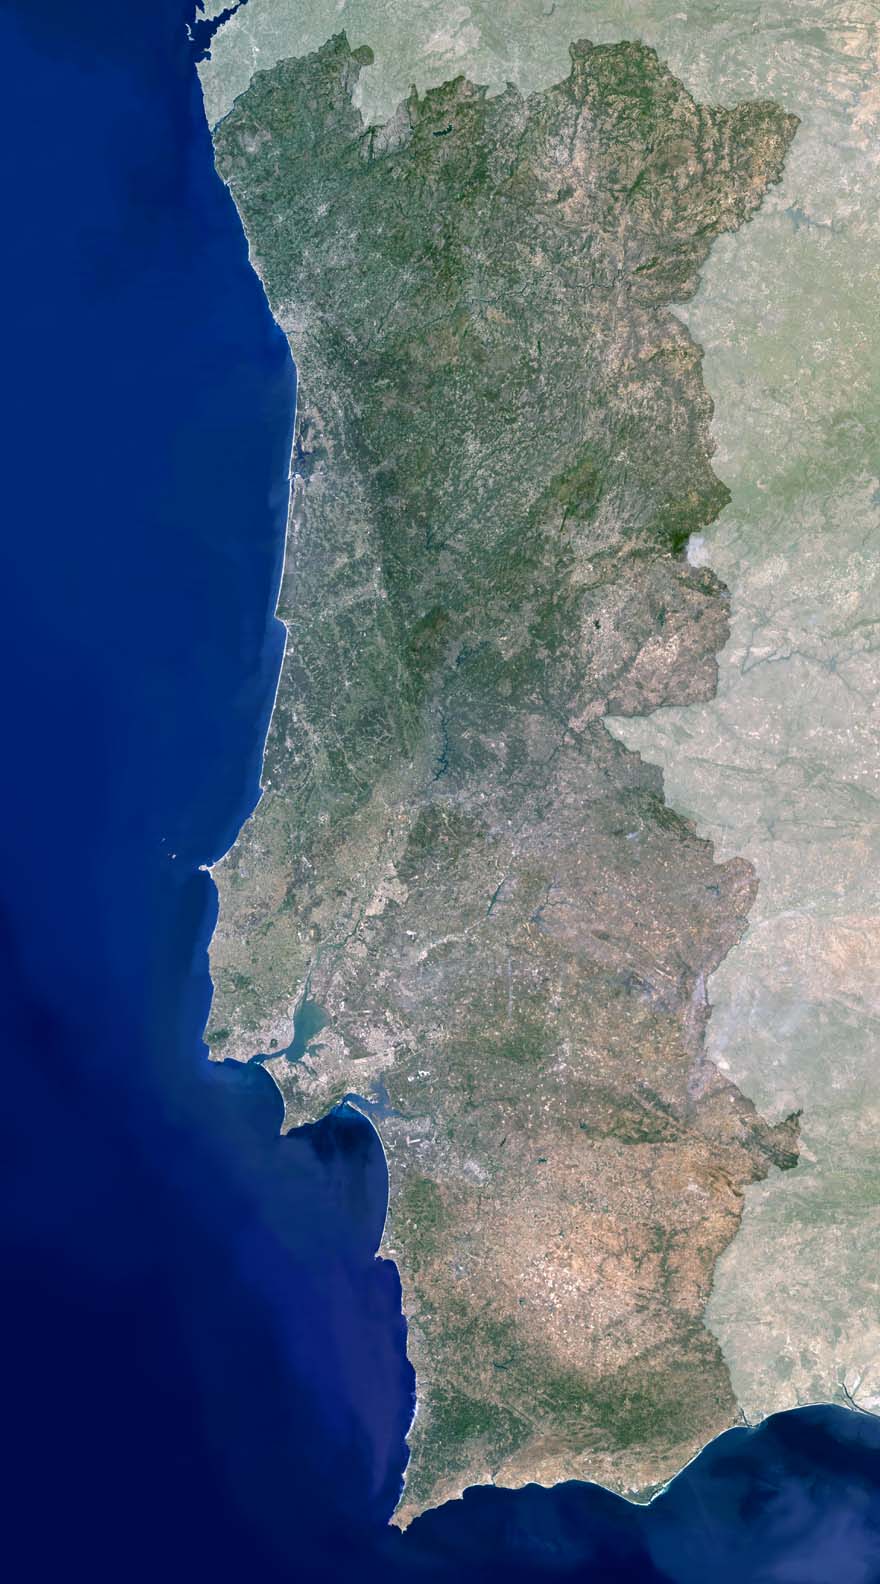 Carte des districts du #Portugal